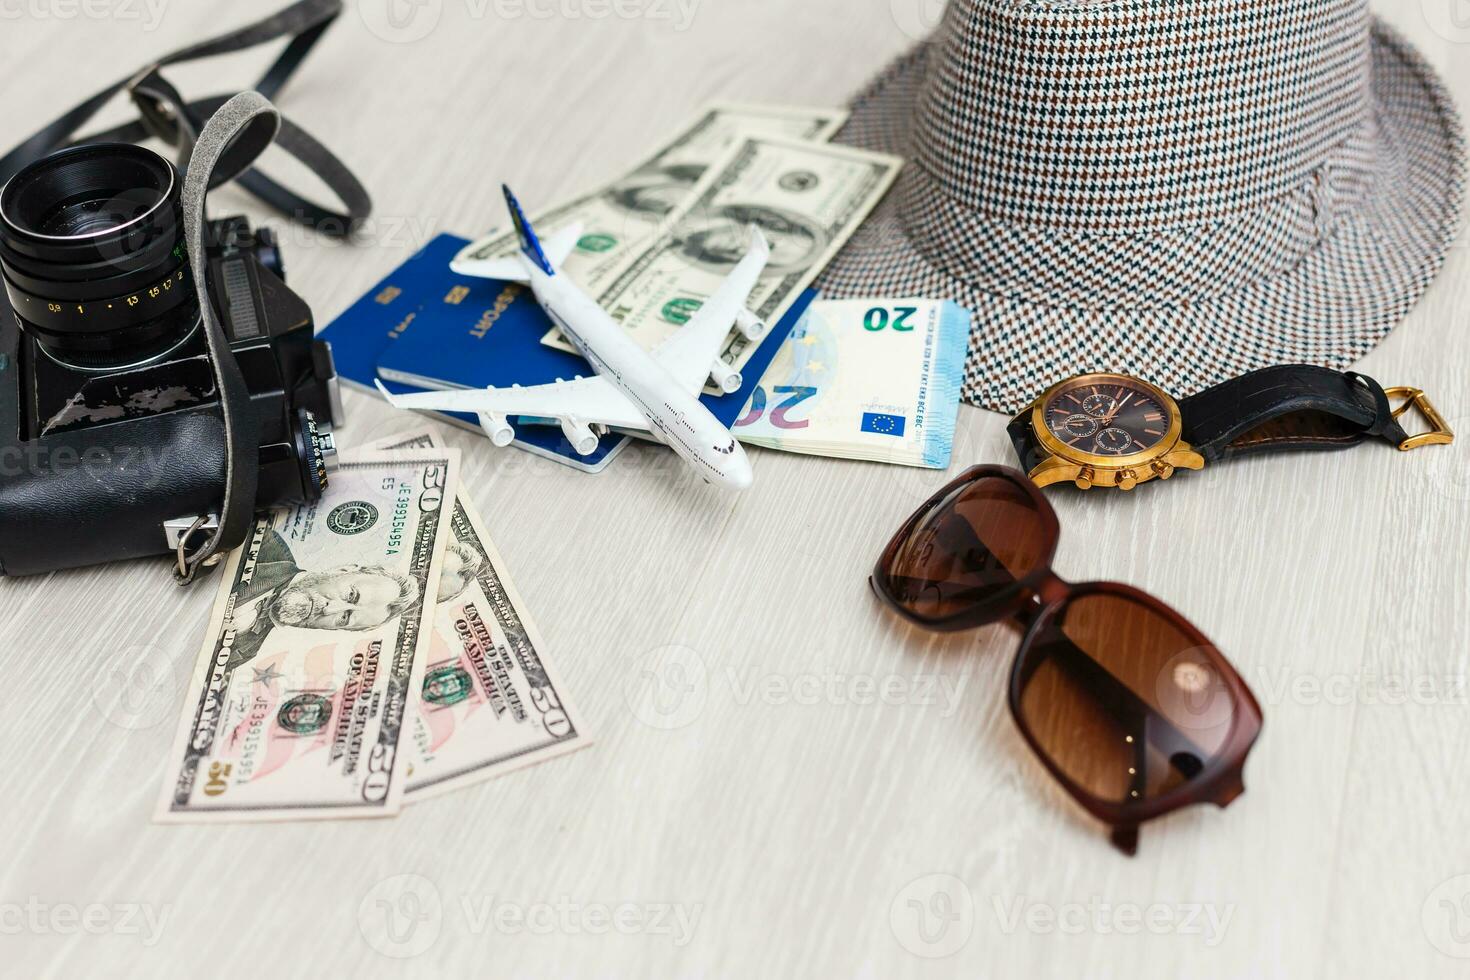 Voyage articles sont une boussole, des billets, documents, argent, une caméra, une jouet avion. Planification de air voyage, vacances, affaires voyages. publicité, bannière. photo